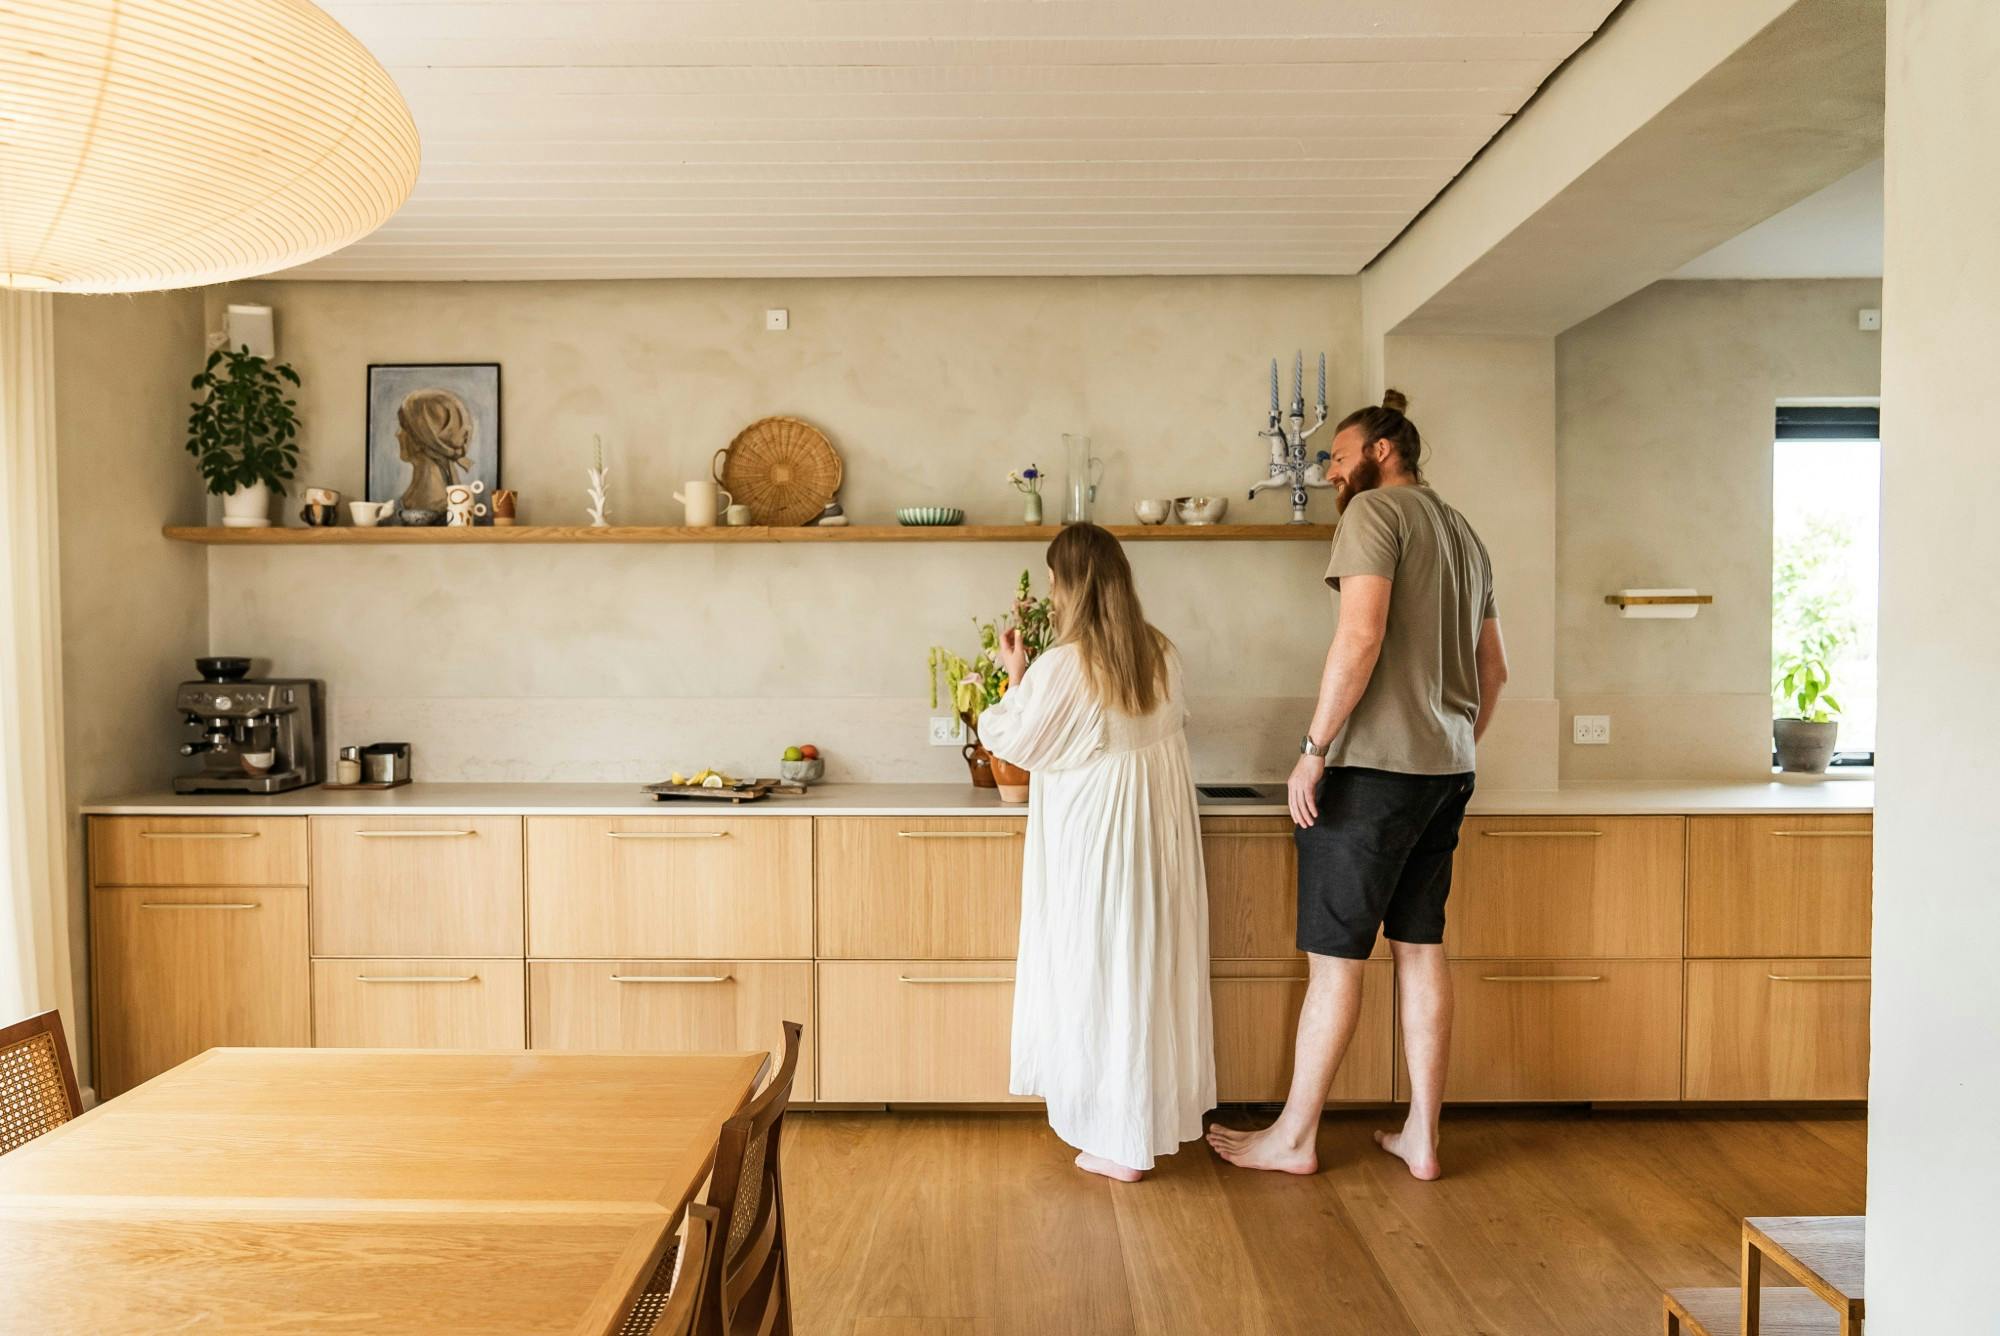 Numero immagine 32 della sezione corrente di {{A seamless worktop for a Nordic home renovated with love}} di Cosentino Italia